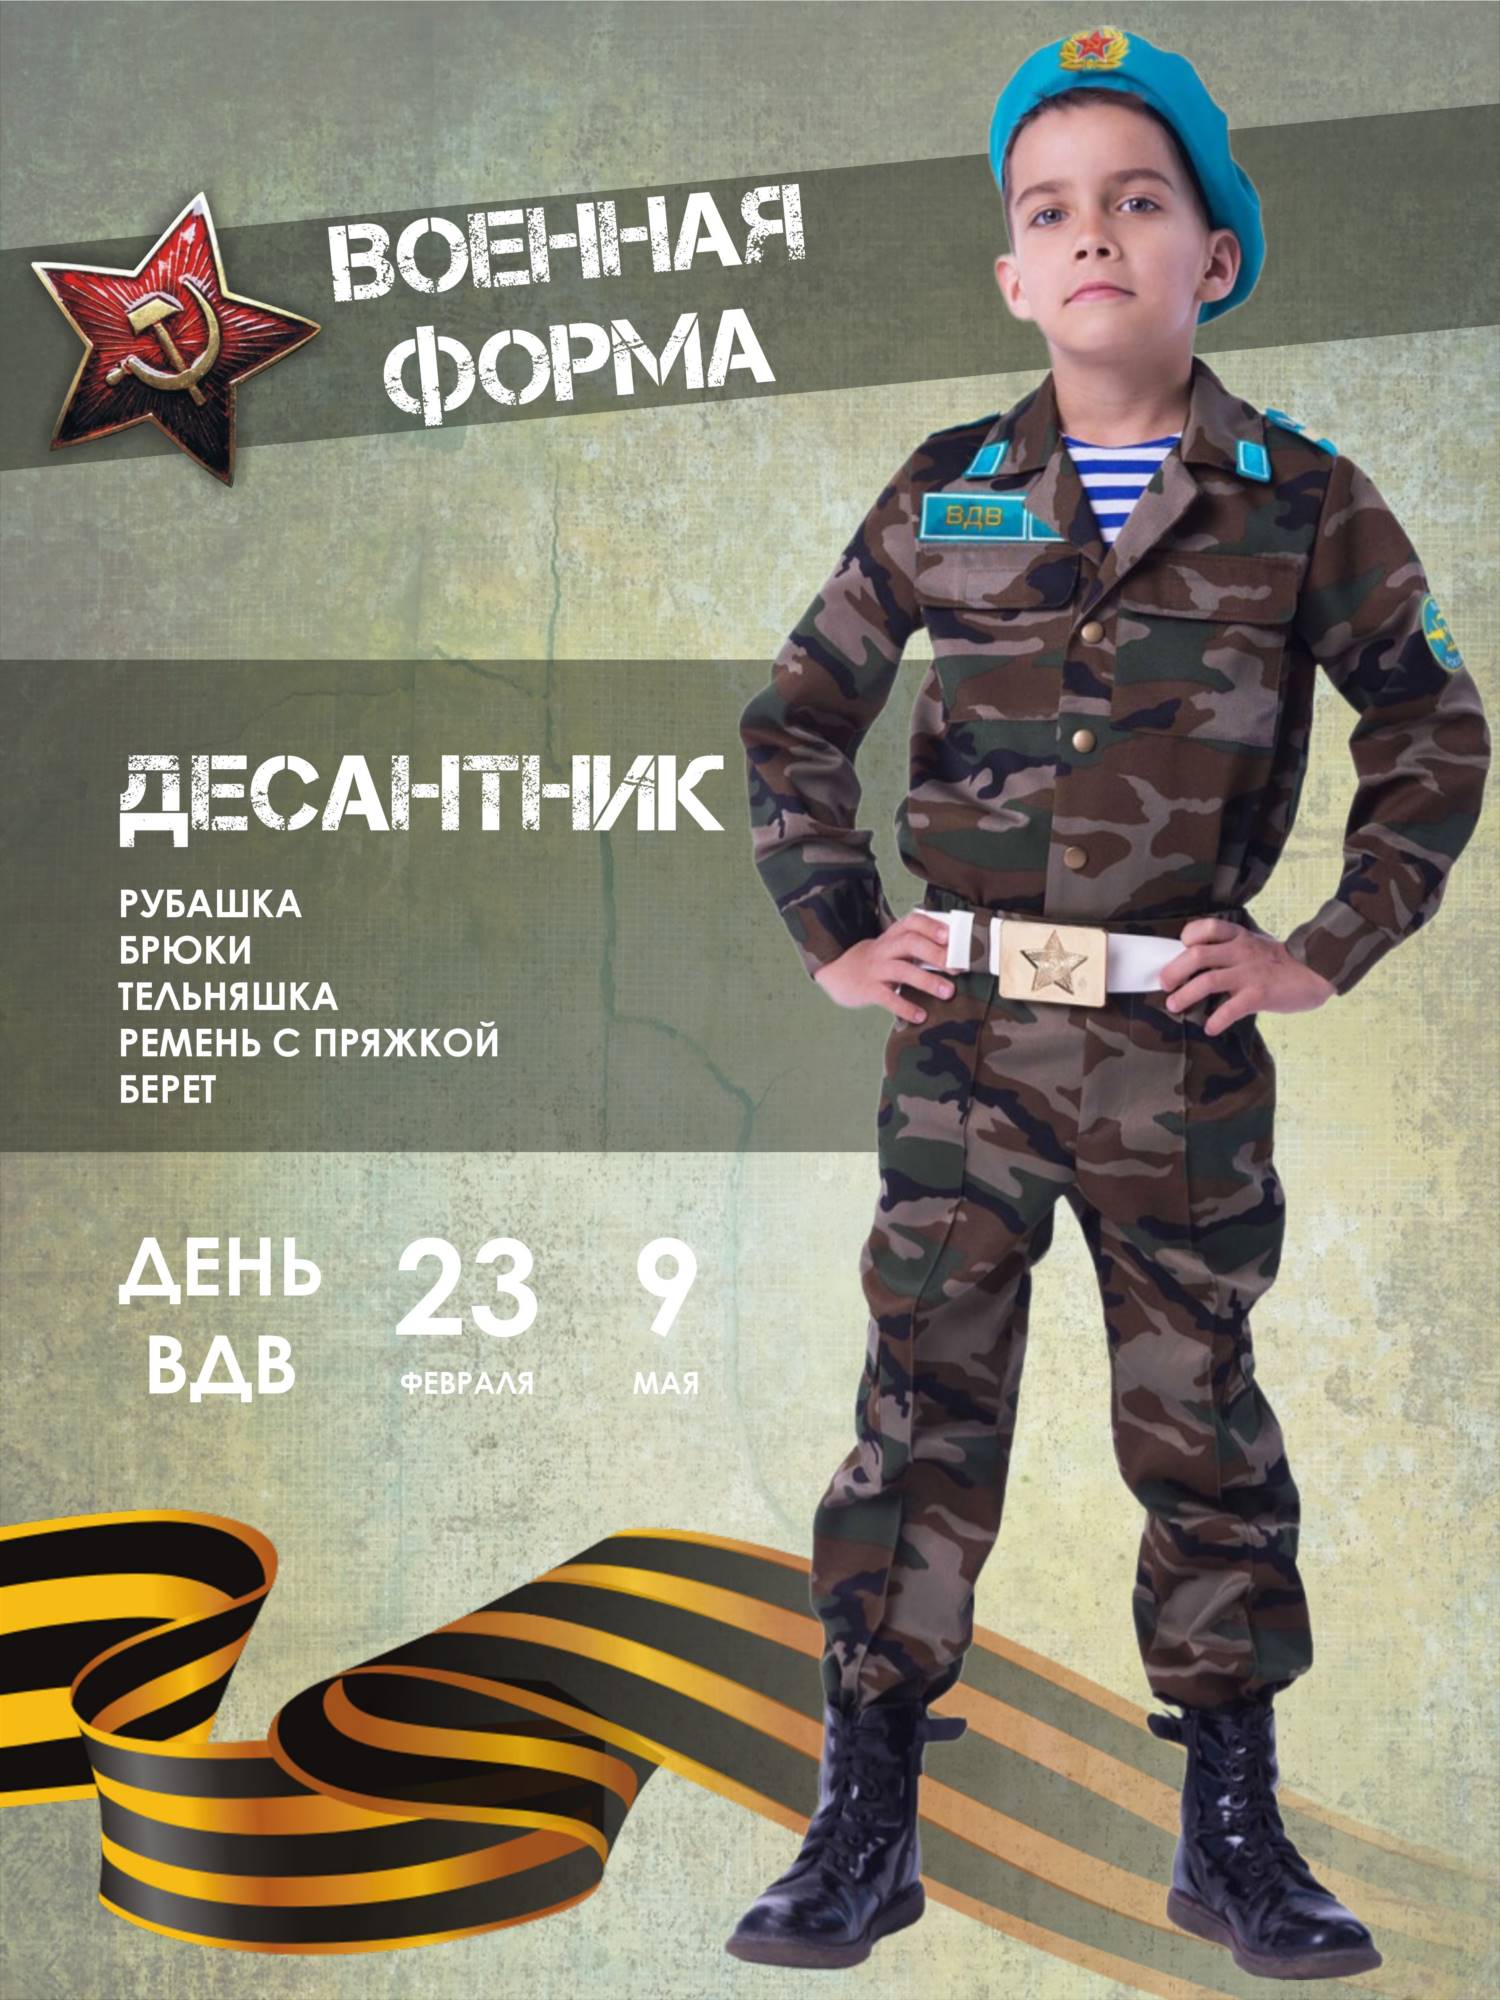 Карнавальный костюм Батик Военный, цв. зеленый р.146